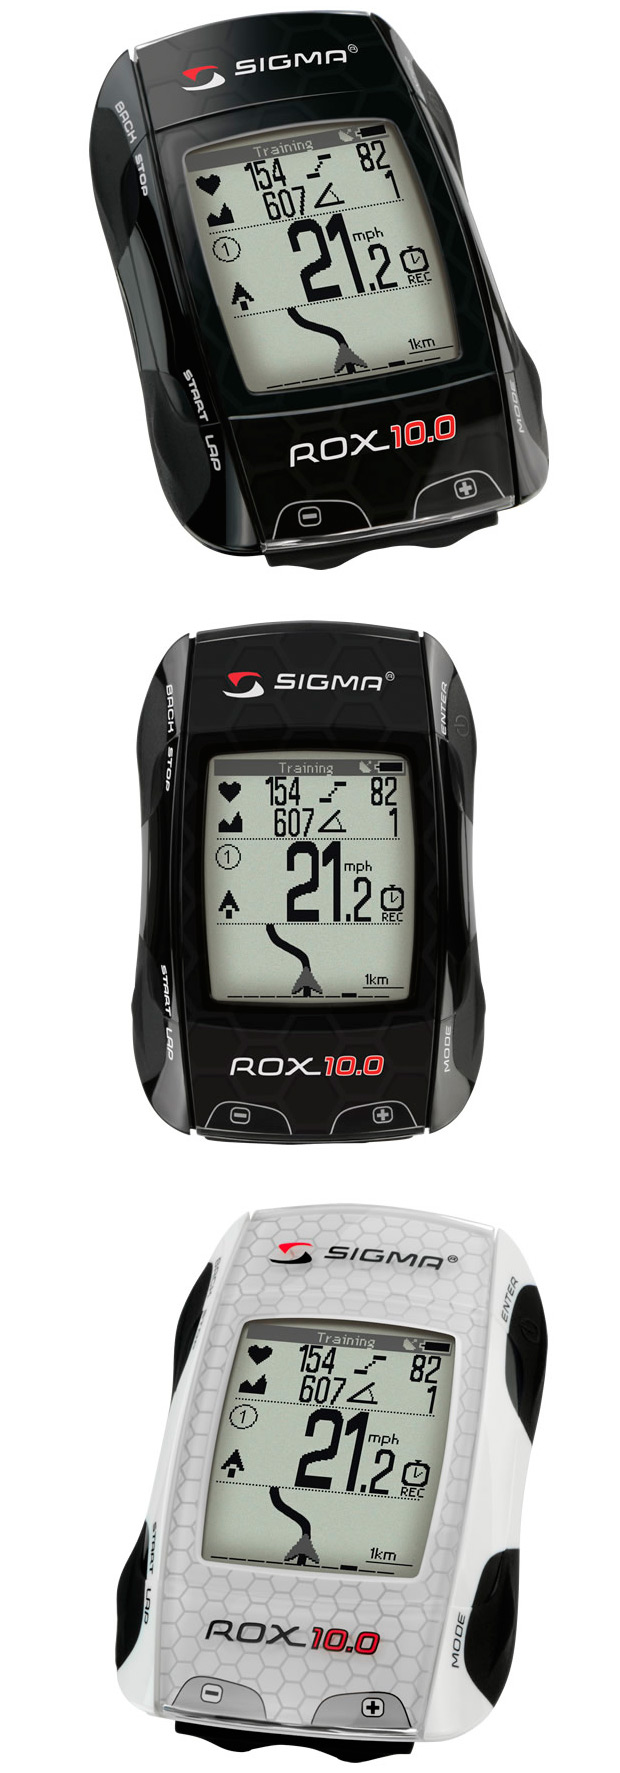 Sigma ROX 10.0: Un GPS de altas prestaciones y múltiples funcionalidades